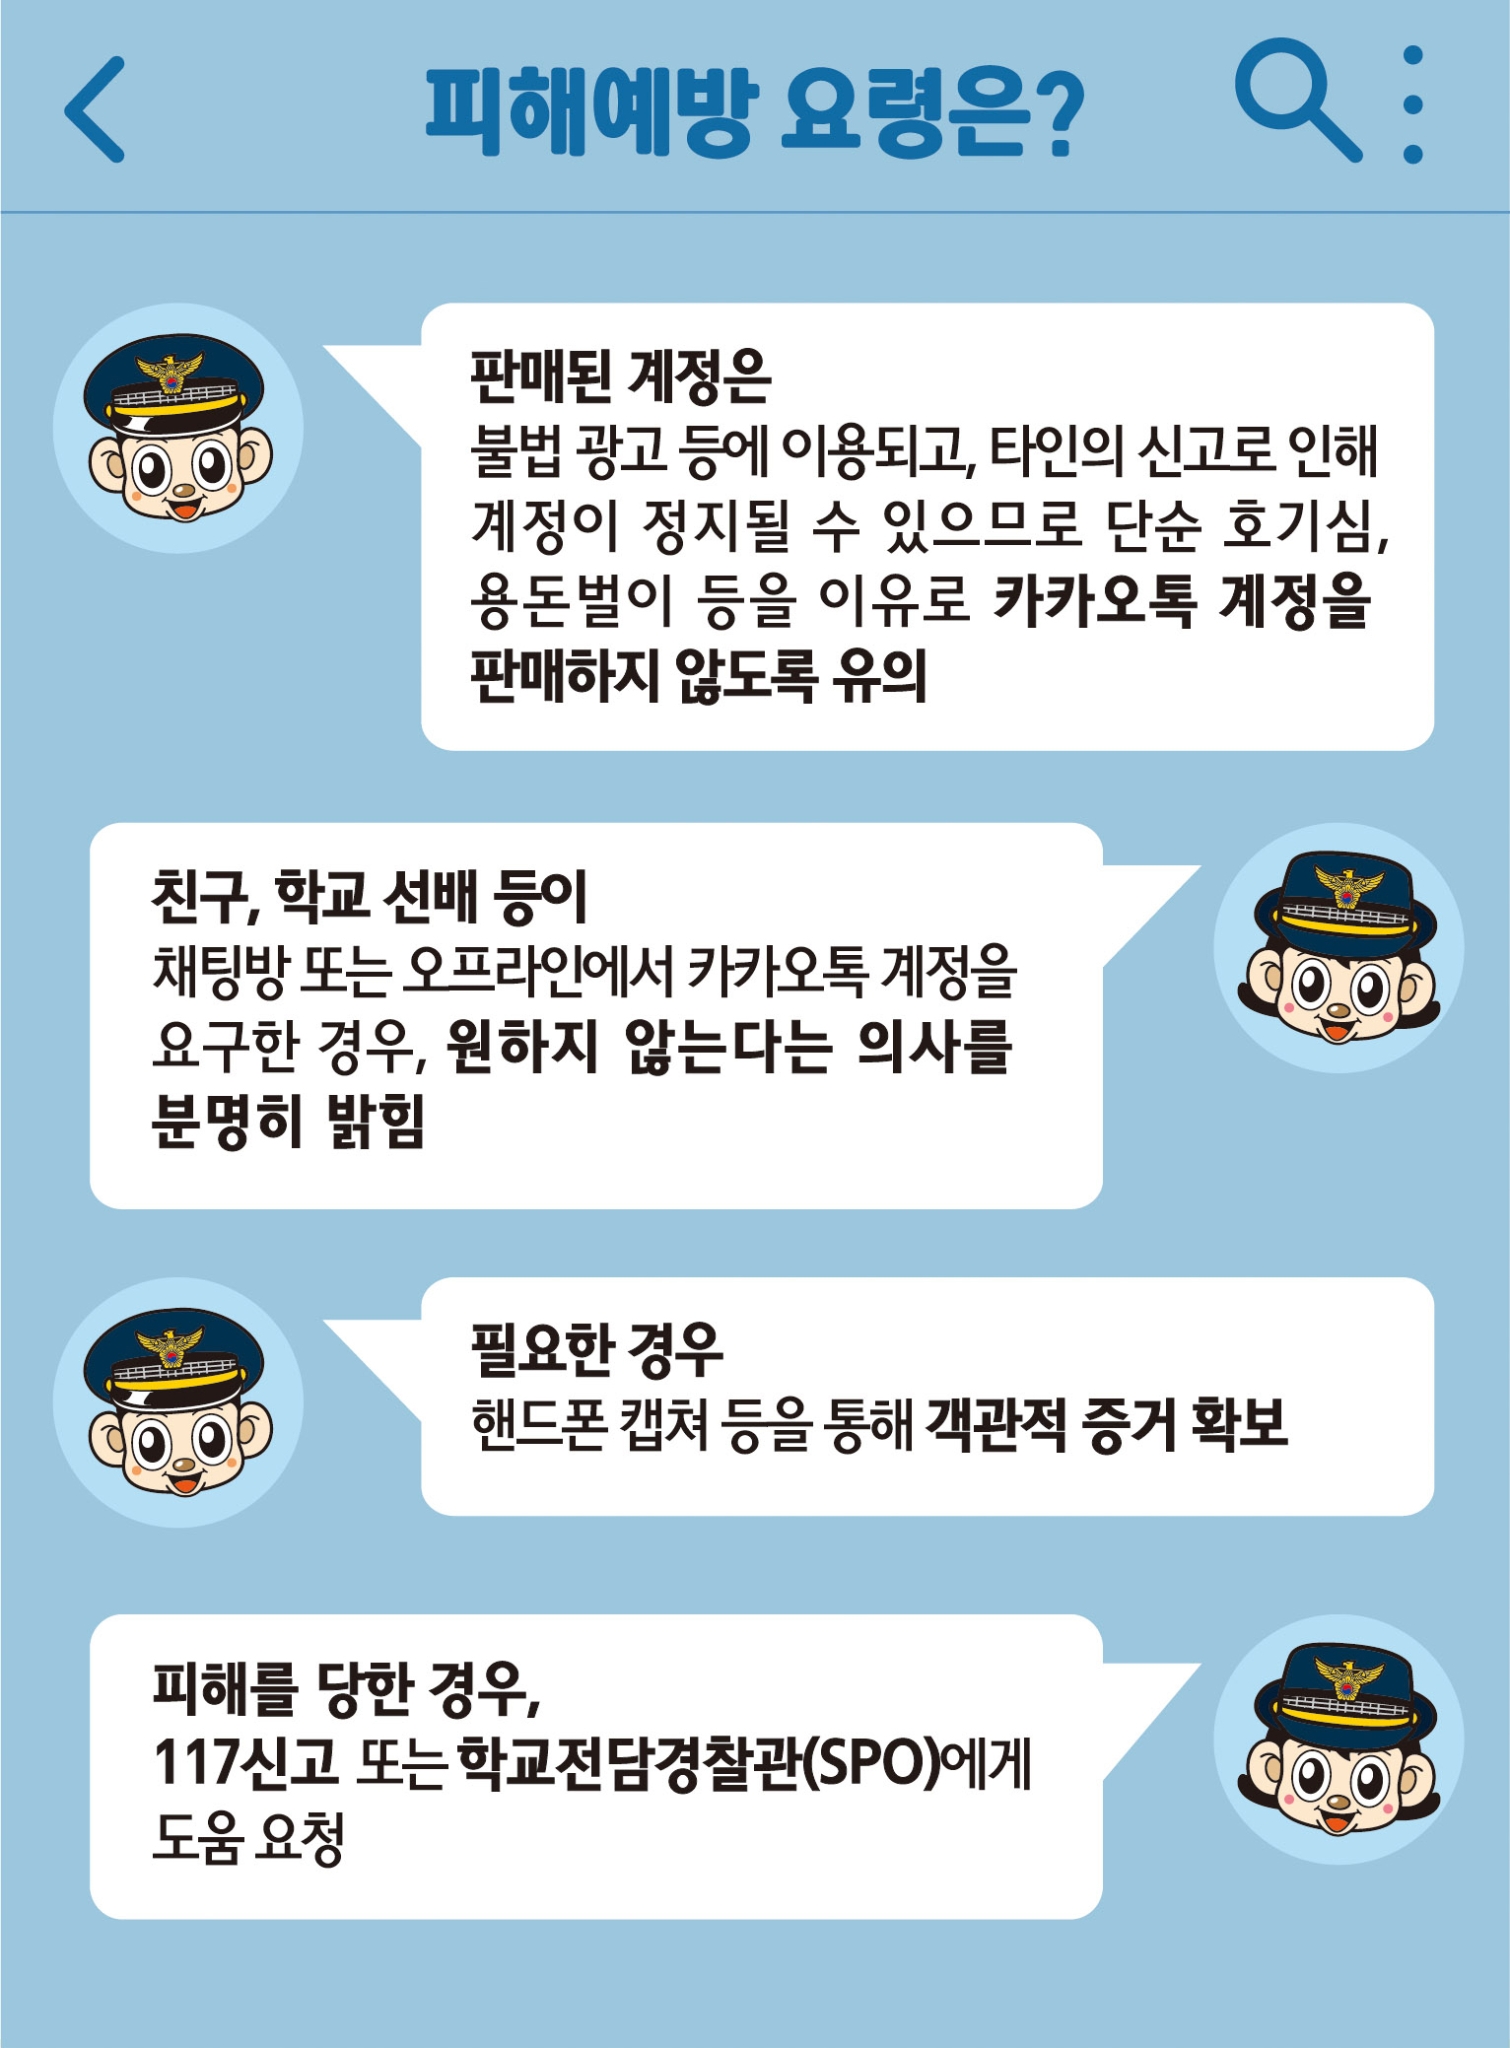 전라북도완주교육지원청 교육지원과_카카오톡 계정 뺏기 게시 자료 8